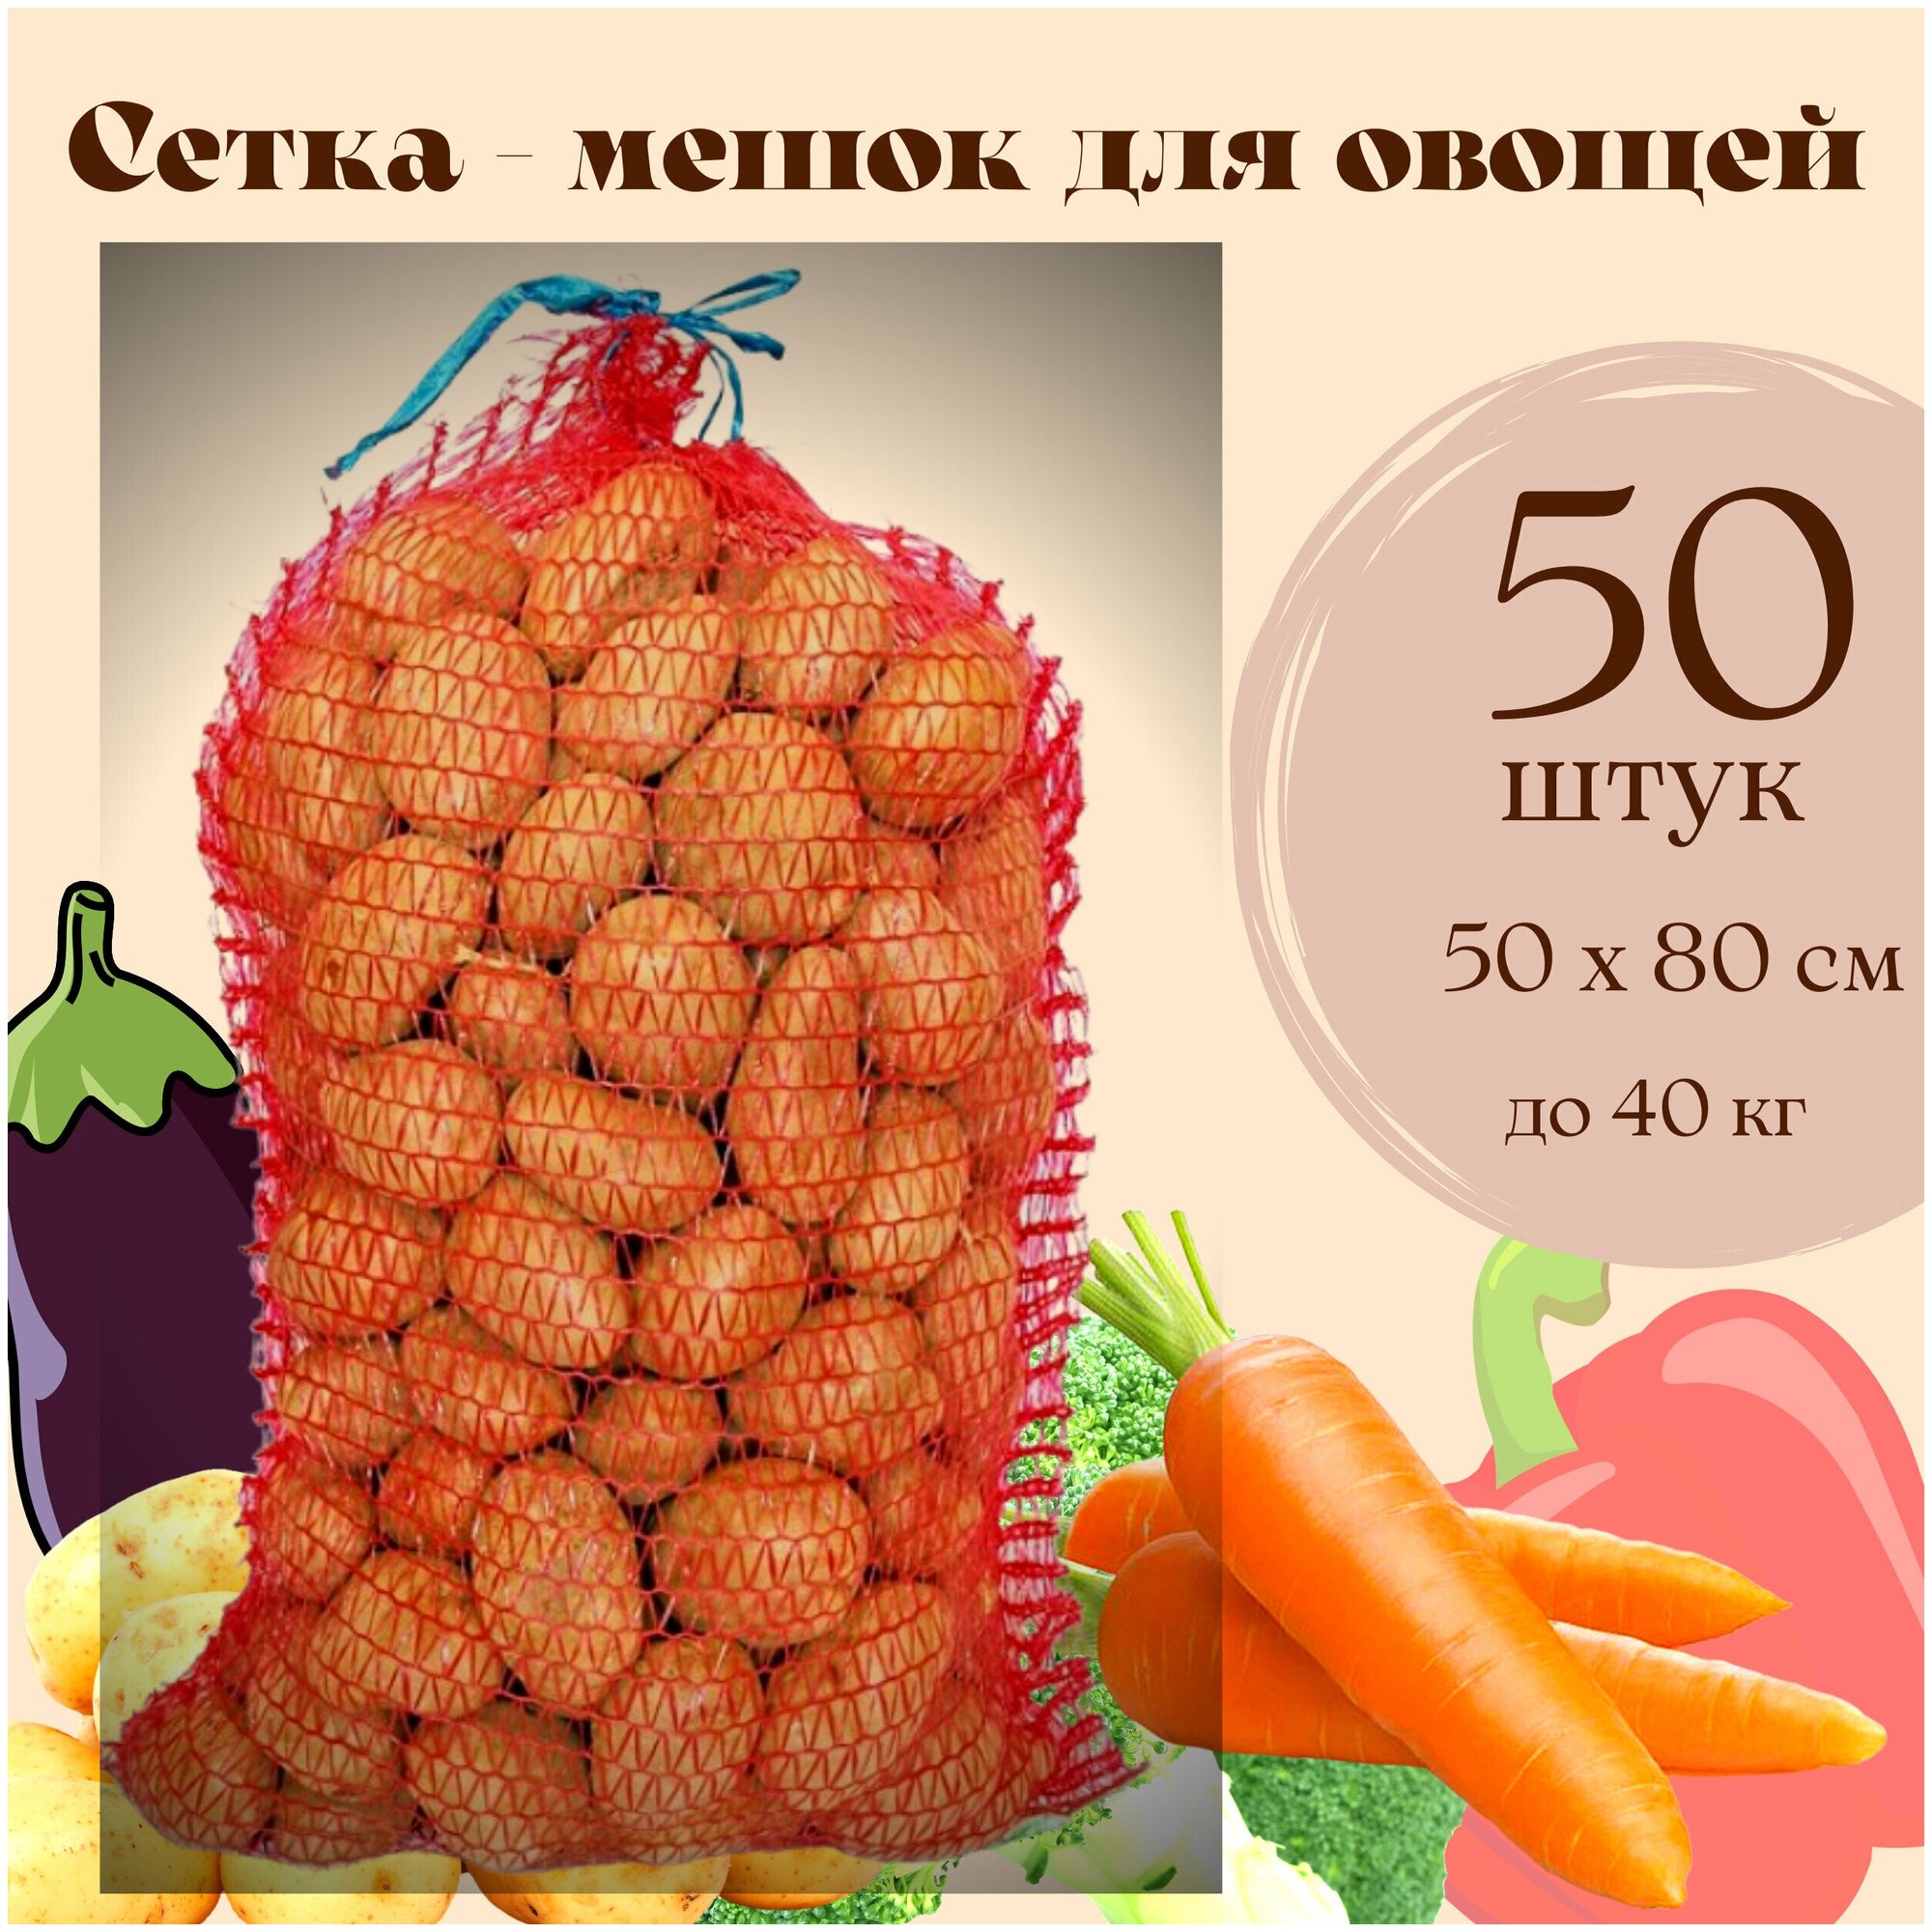 Сетка - Мешок для овощей до 40 кг для урожая и хранения картошки лука моркови яблок с завязками 50 х 80 50 штук